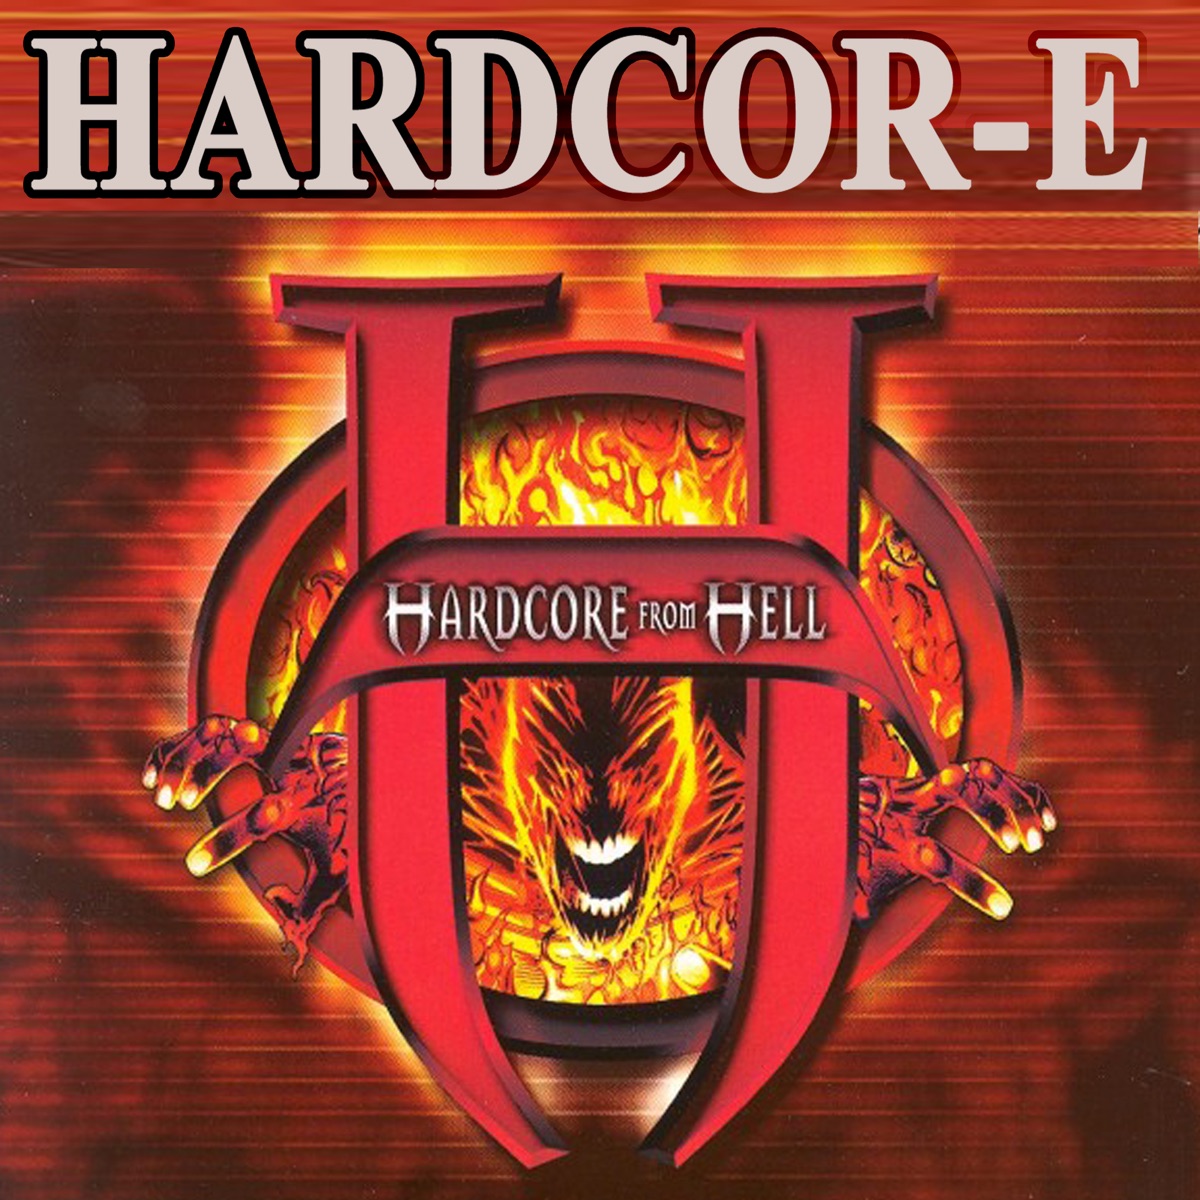 ‎Hardcor-e from Hell - Album by Hardcor-e - Apple Music